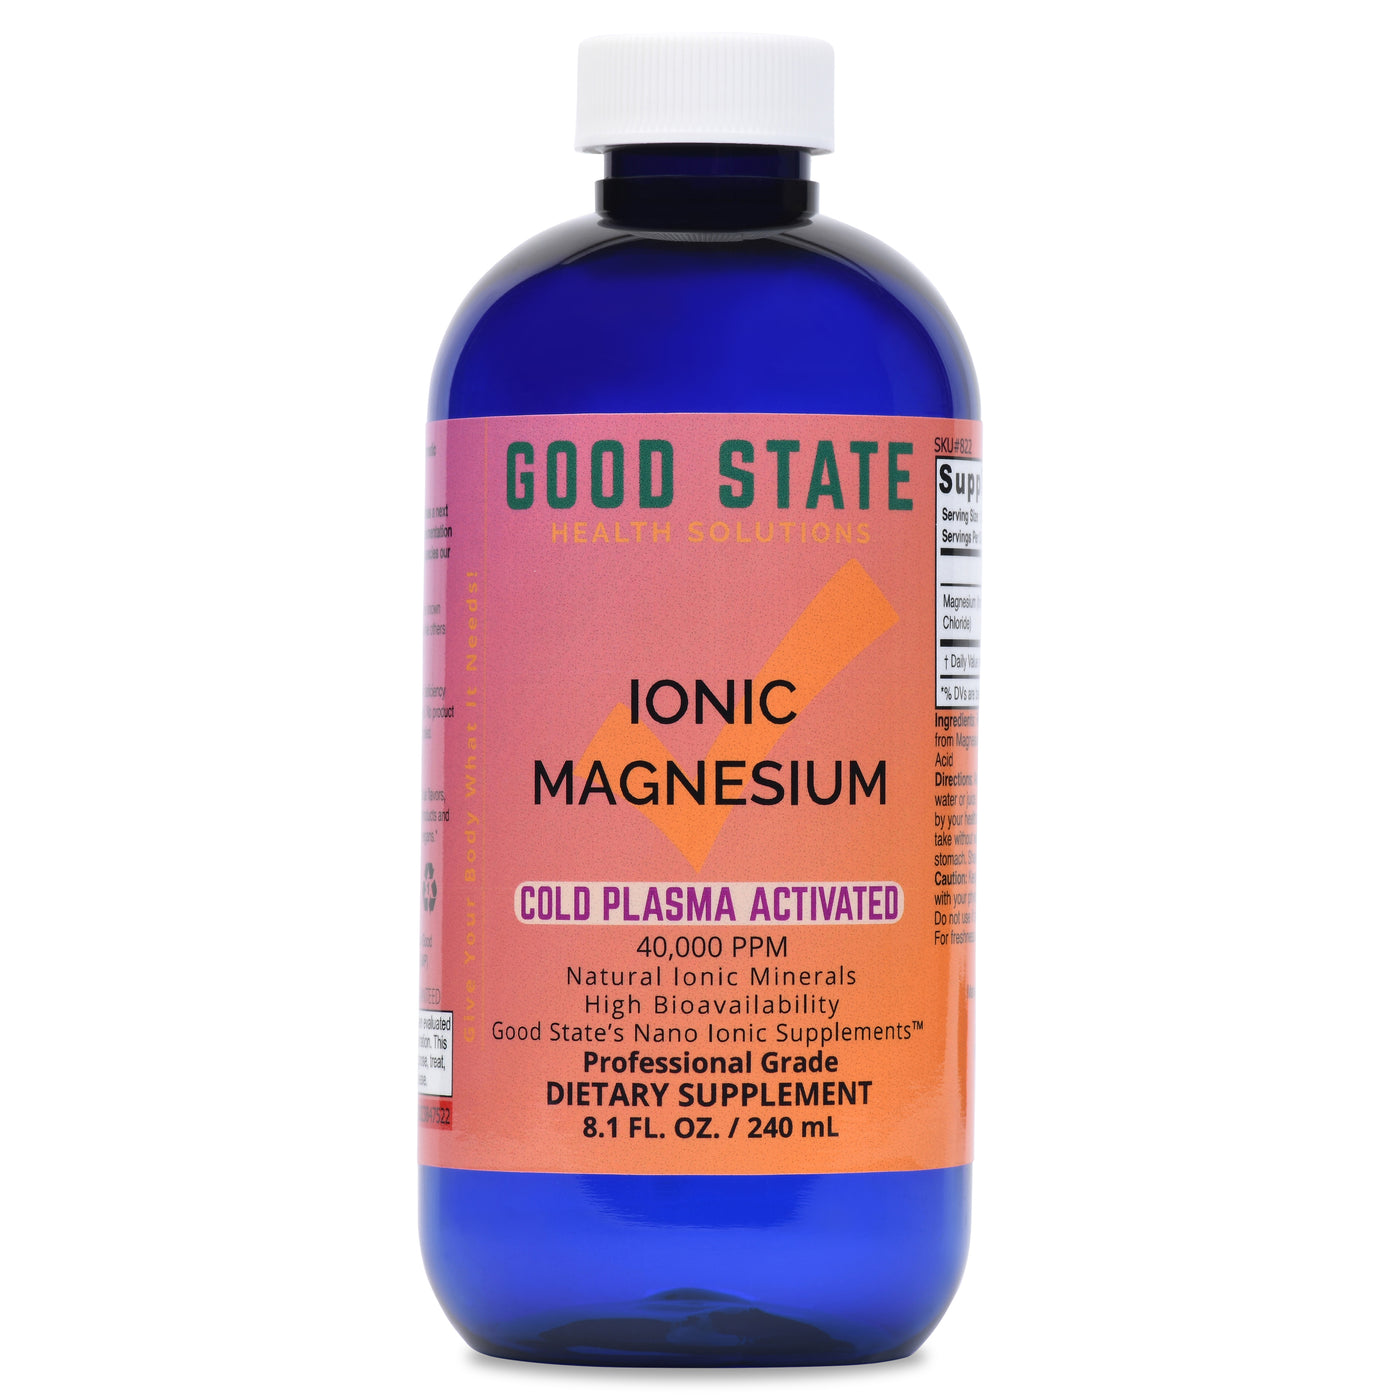 Cold Plasma-Activated Liquid Ionic Magnesium | 100 mg per serving